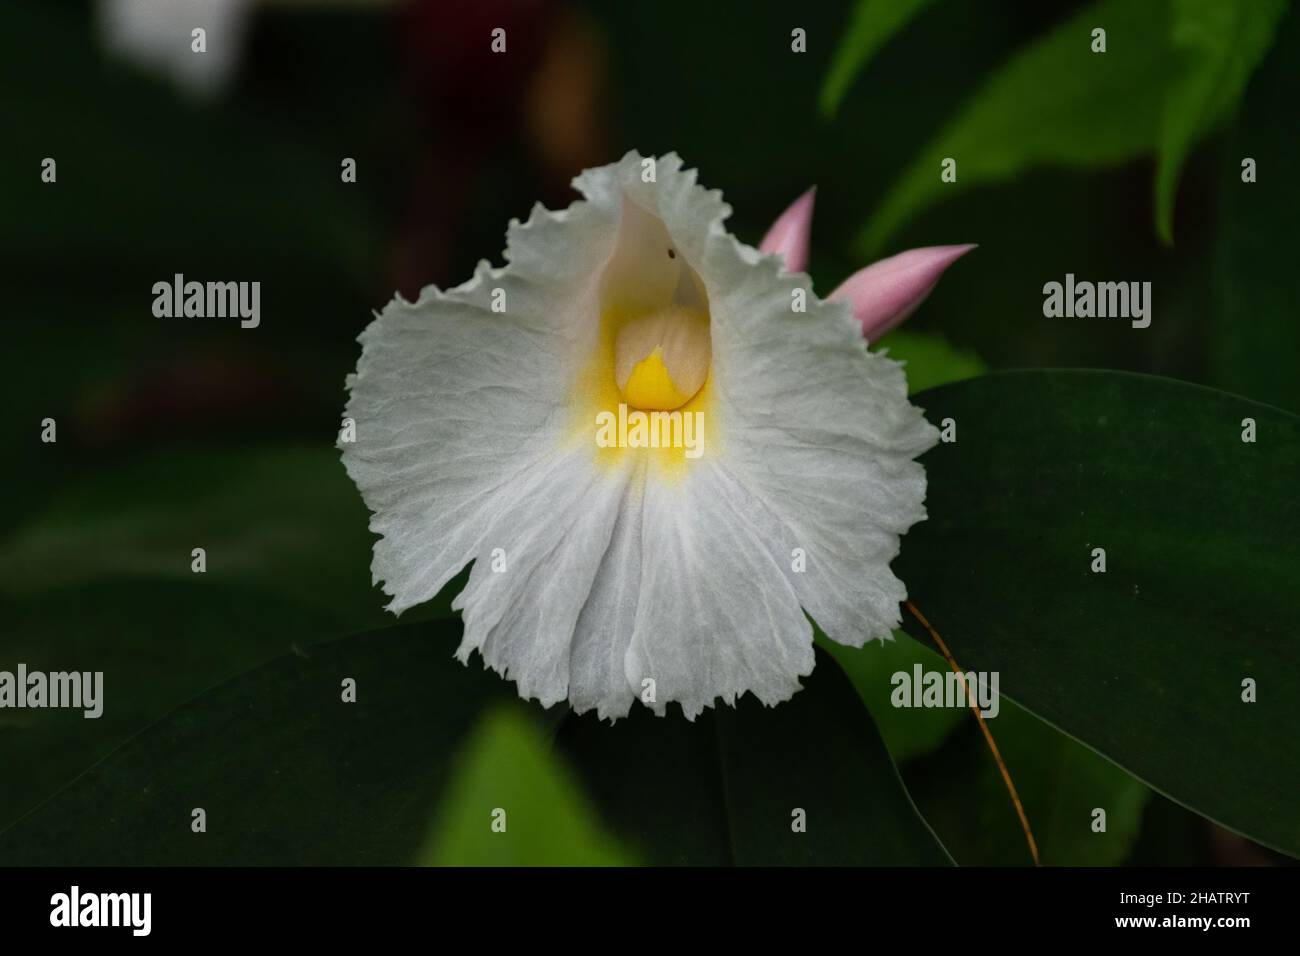 Nahaufnahme einer Blume des Wilden Ingwers (Costus speciosus) im Garten. Auch bekannt als Insulinpflanze und wird für medizinische Zwecke verwendet. Stockfoto